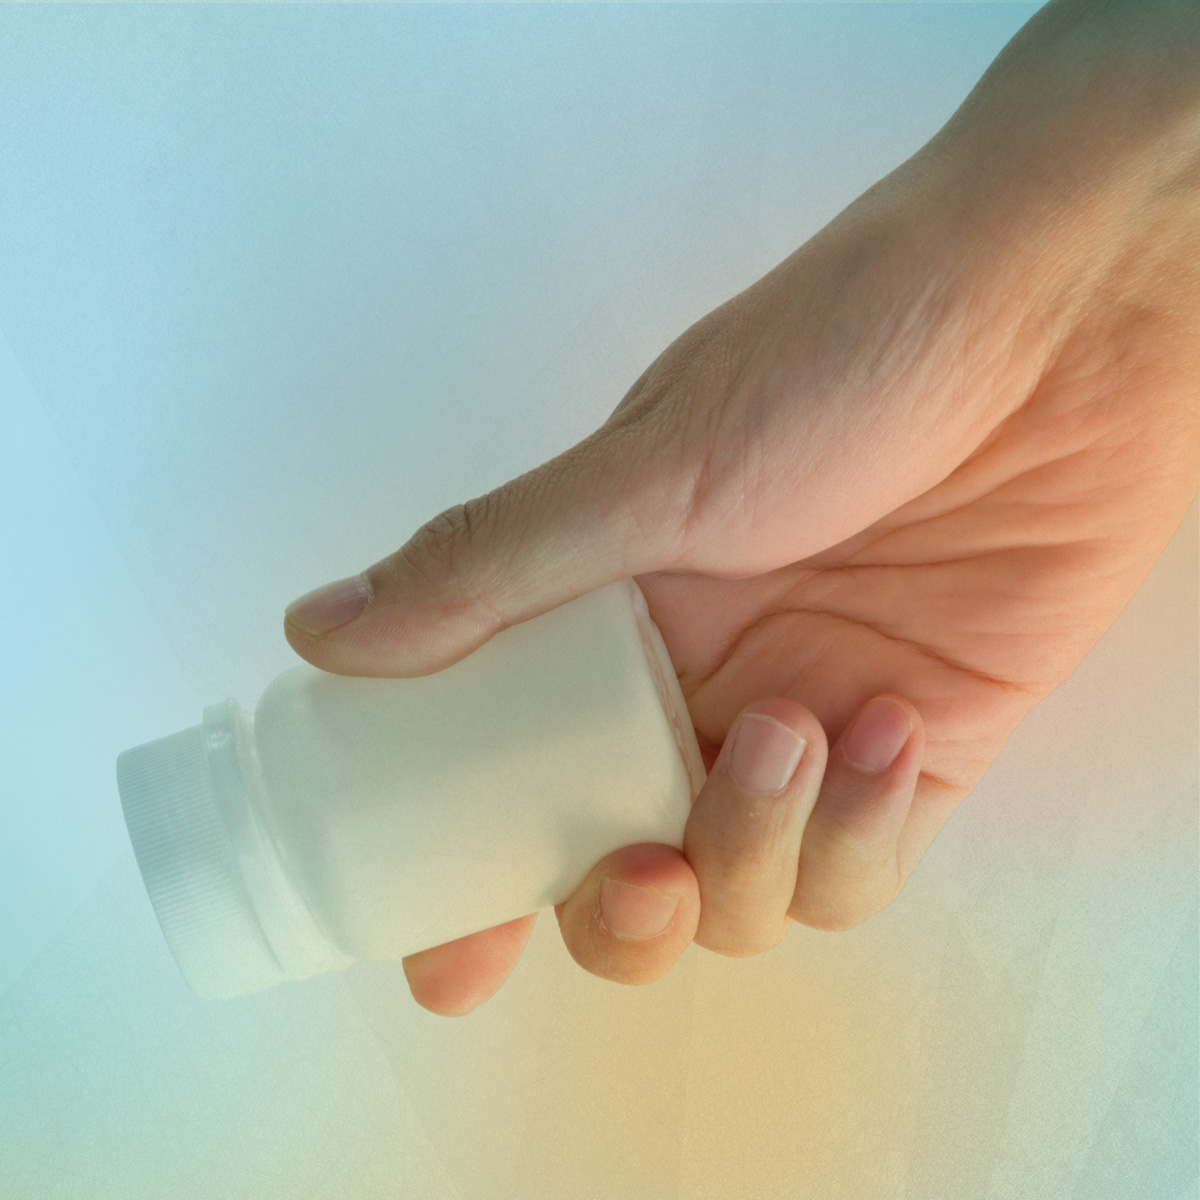 Hand holding pill bottle 